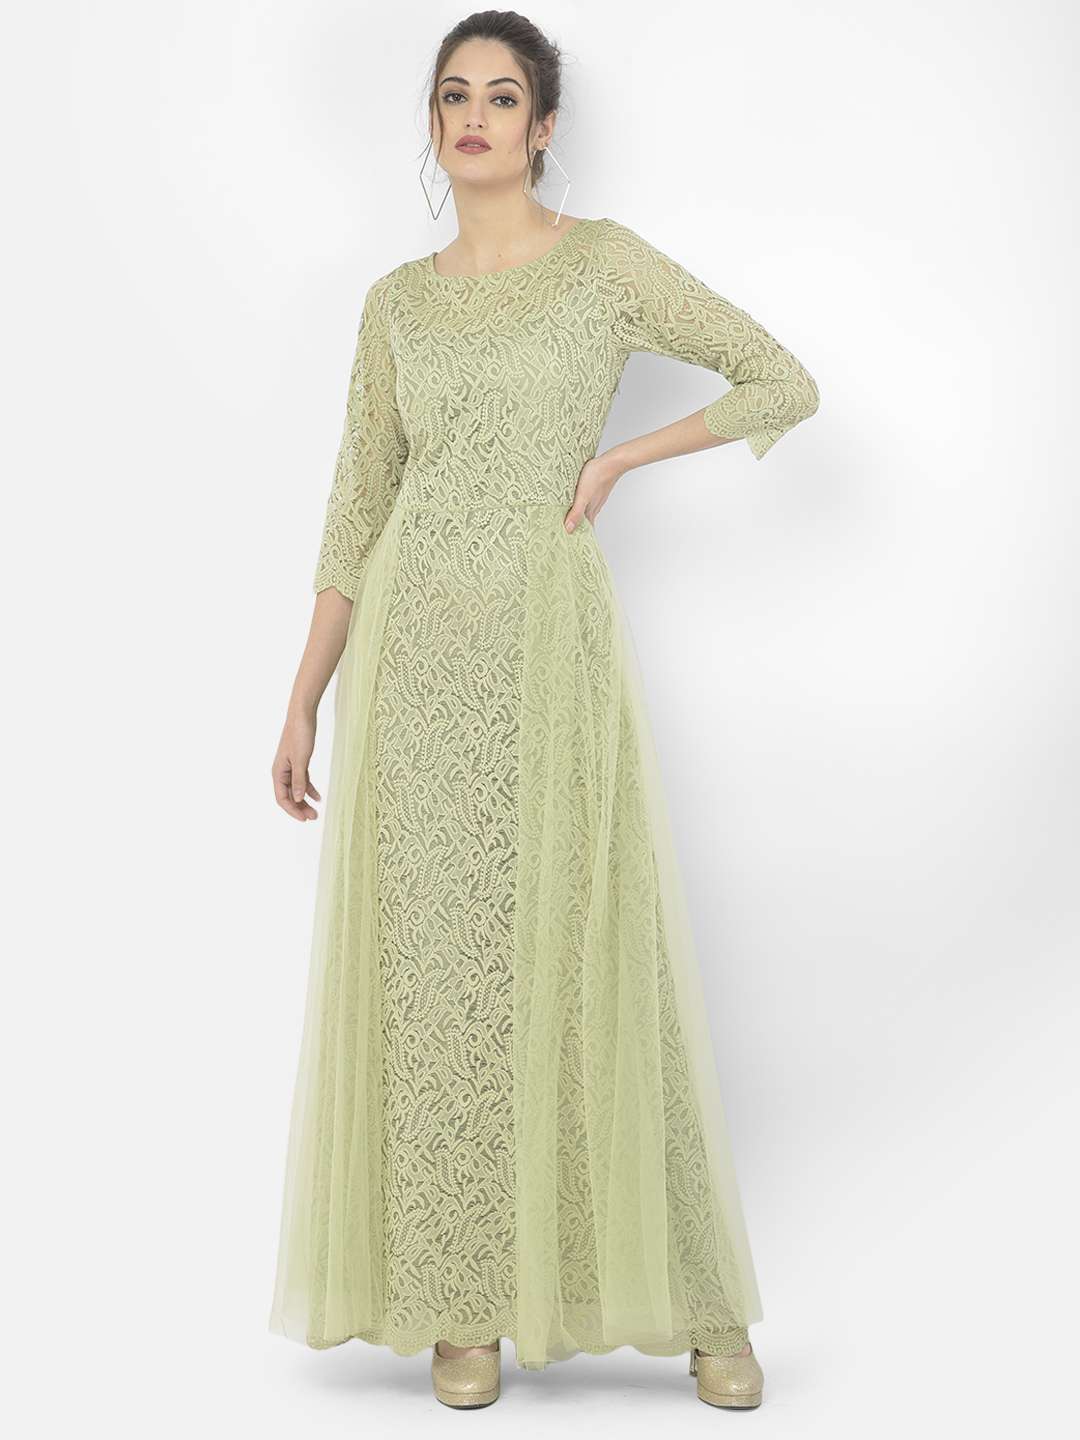 Eavan Olive Green Lace Maxi Dress